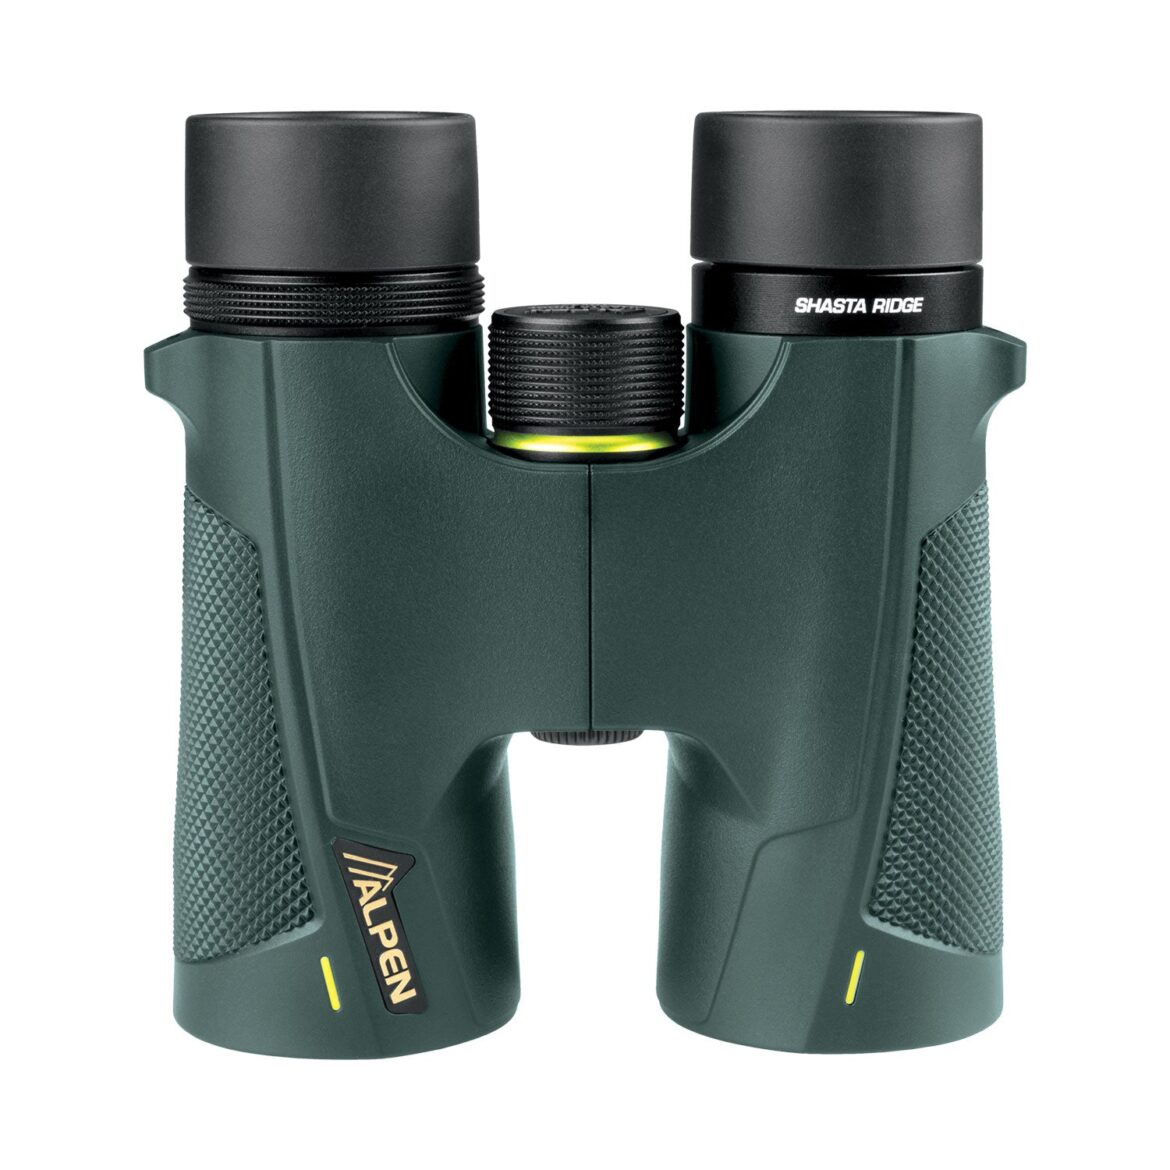 New Shasta Ridge 8×42 Binoculars